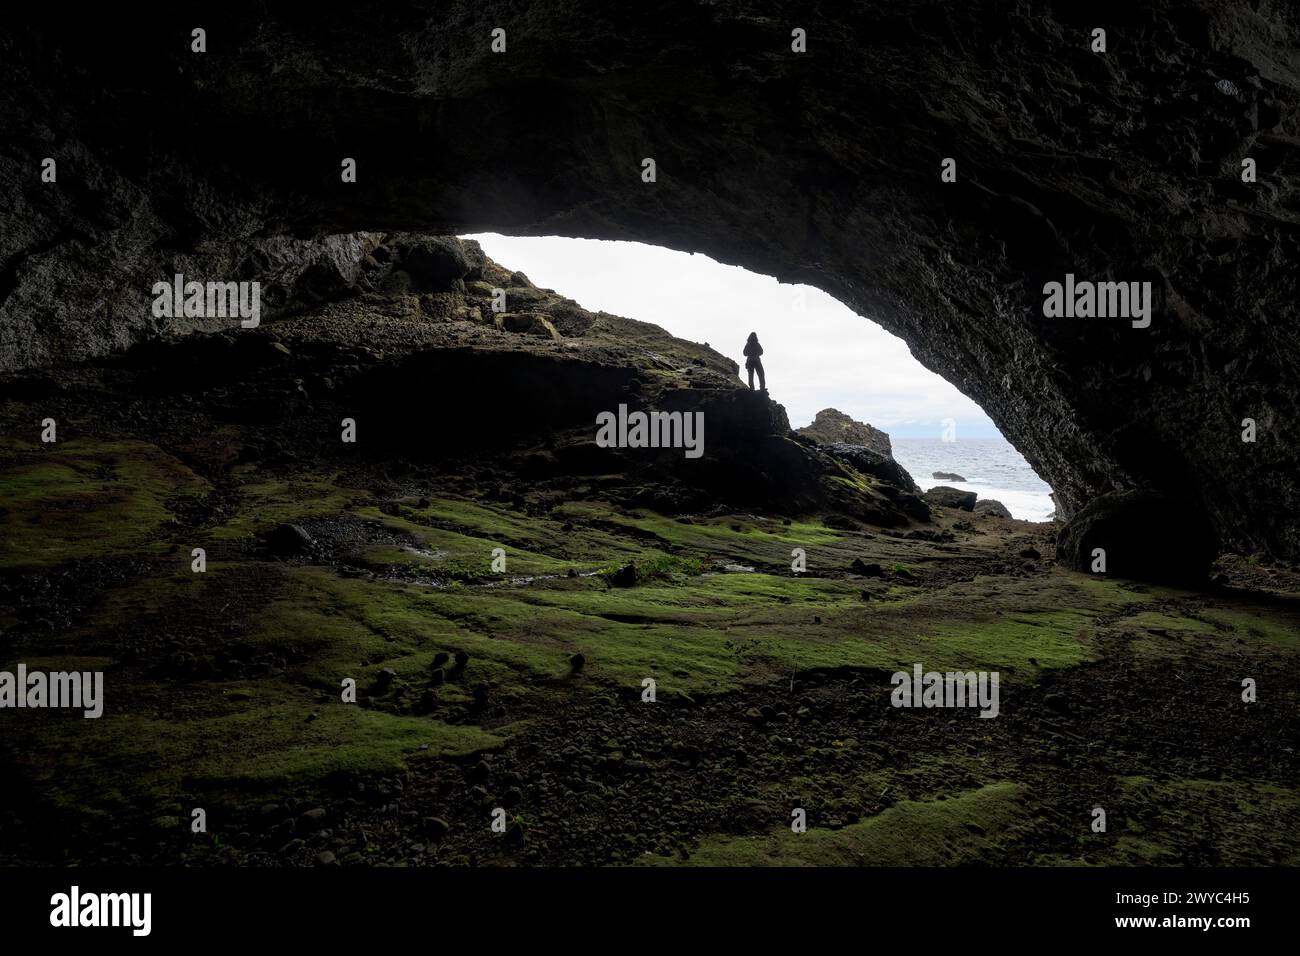 Una persona si trova alla foce di una grande grotta marina, sagomata contro il cielo luminoso e la costa frastagliata Foto Stock